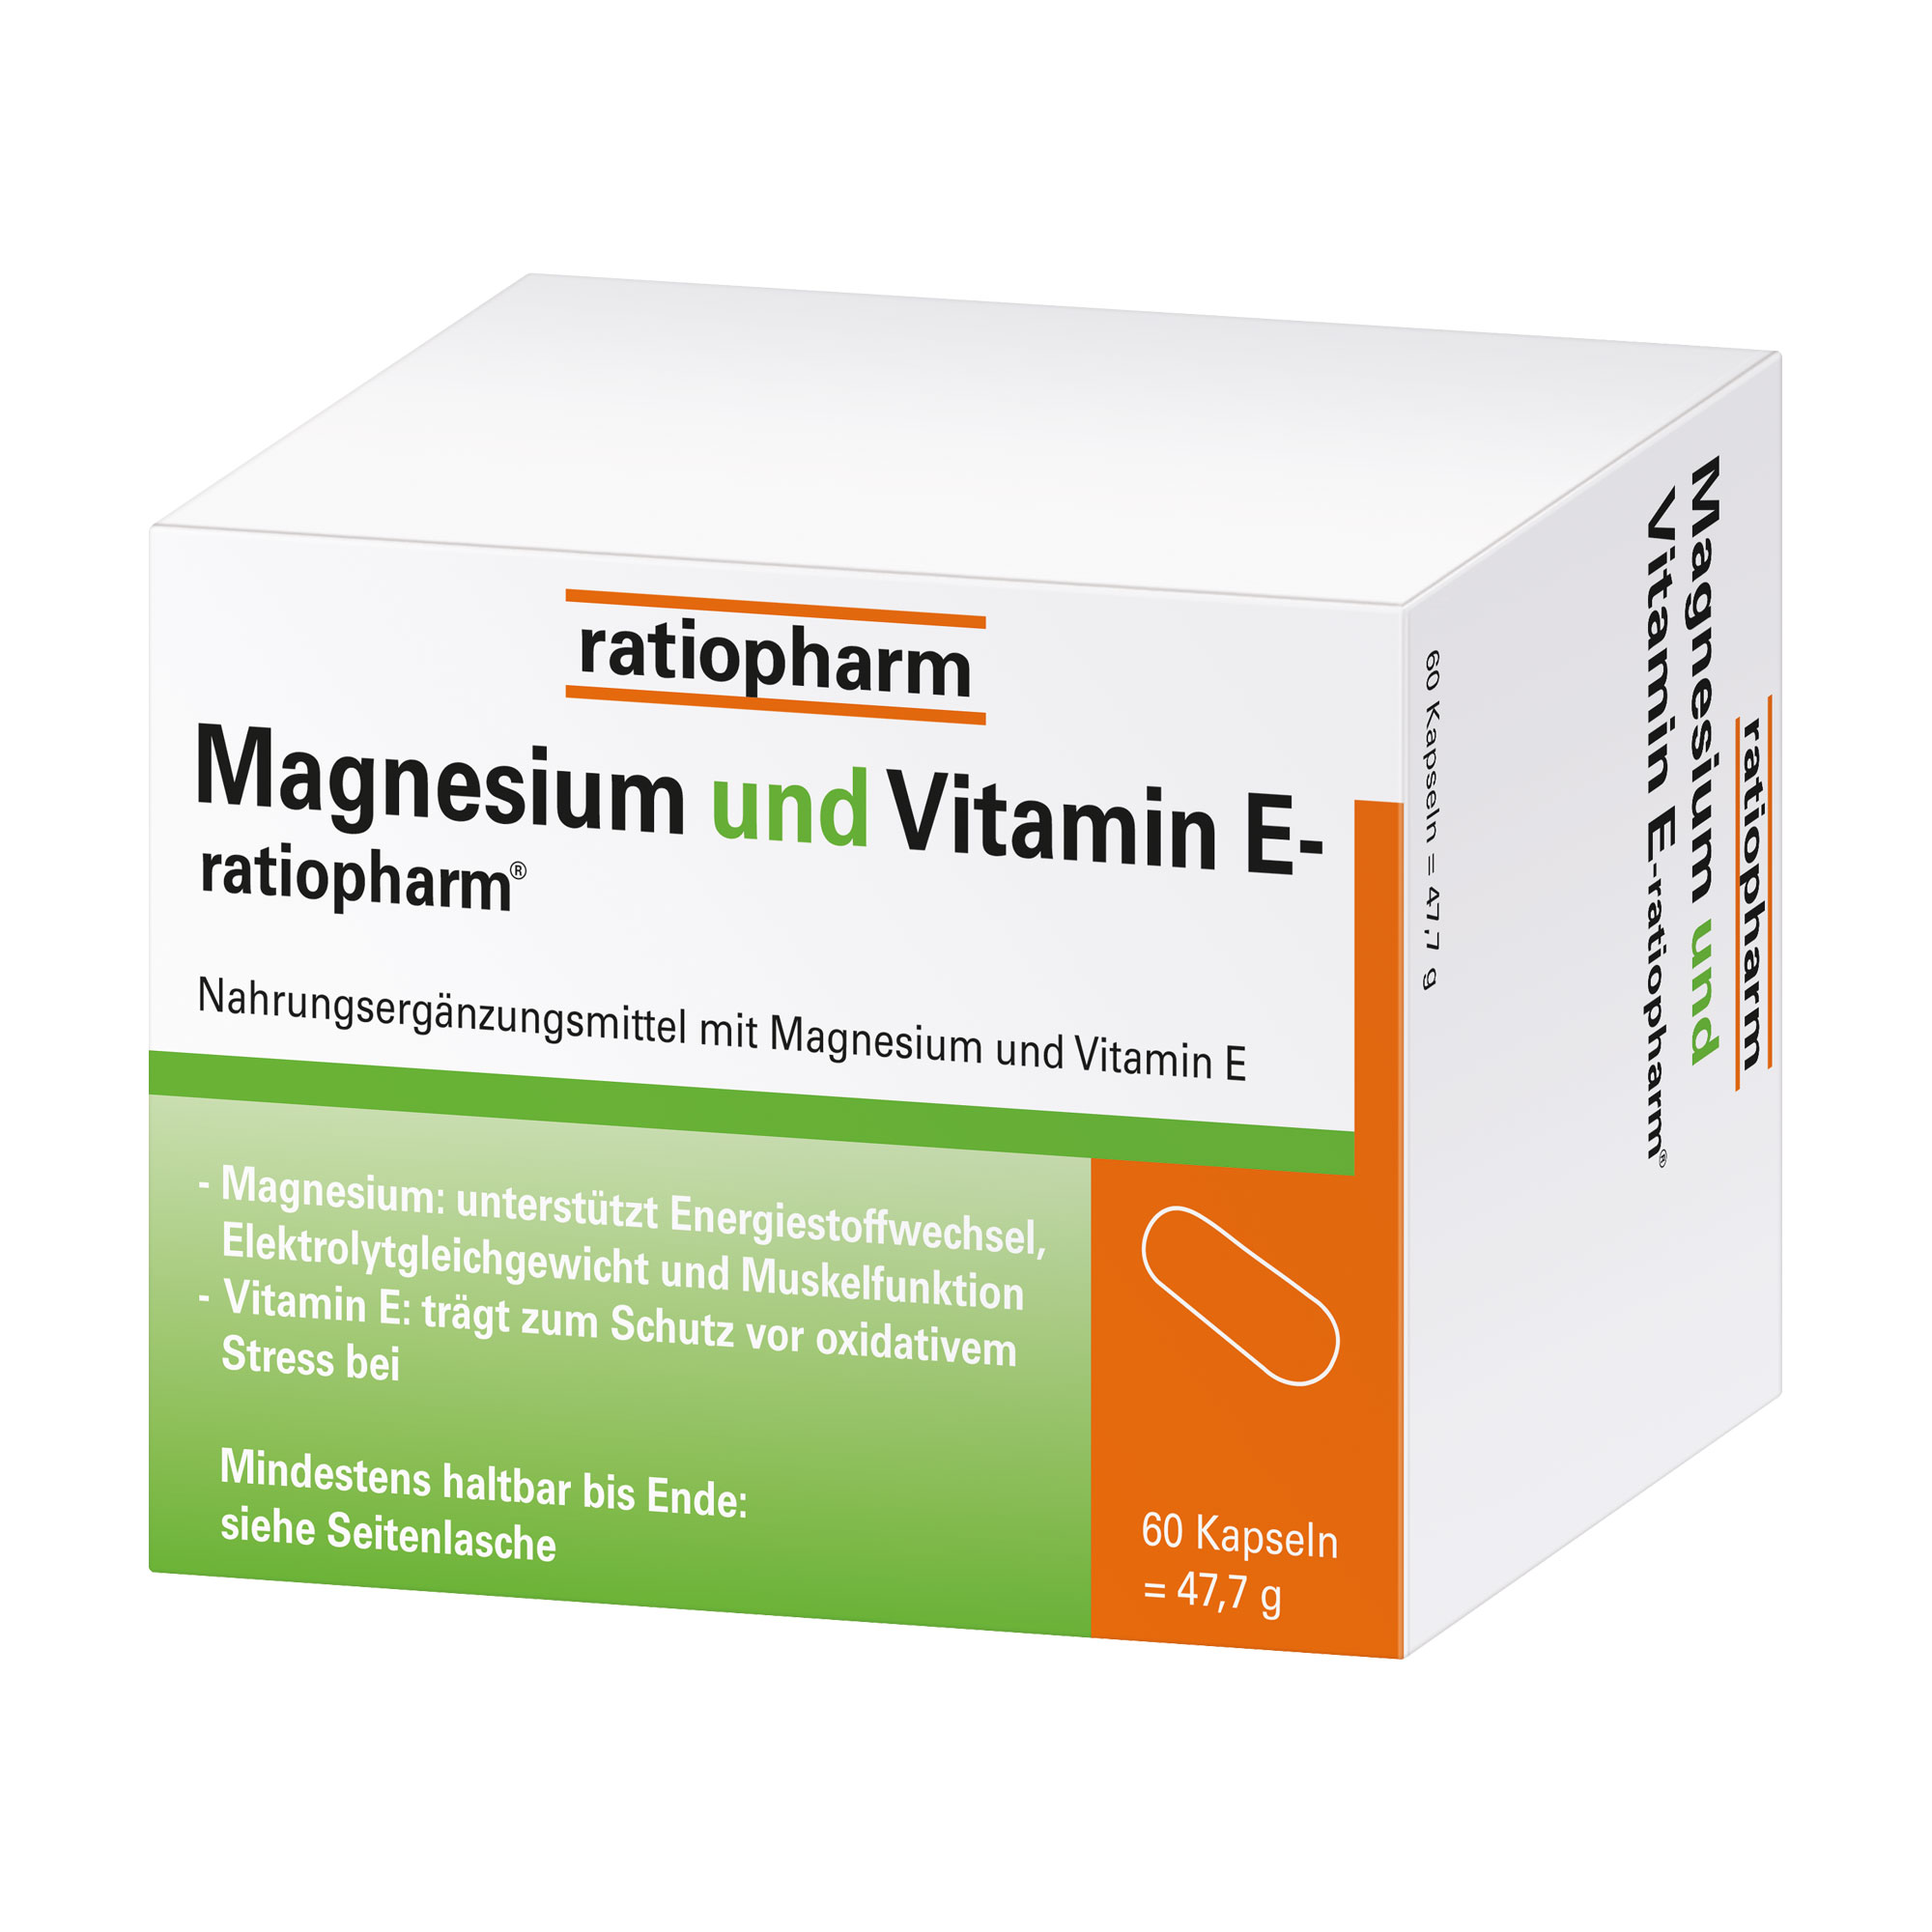 Nahrungsergänzungsmittel mit Magnesium und Vitamin E.